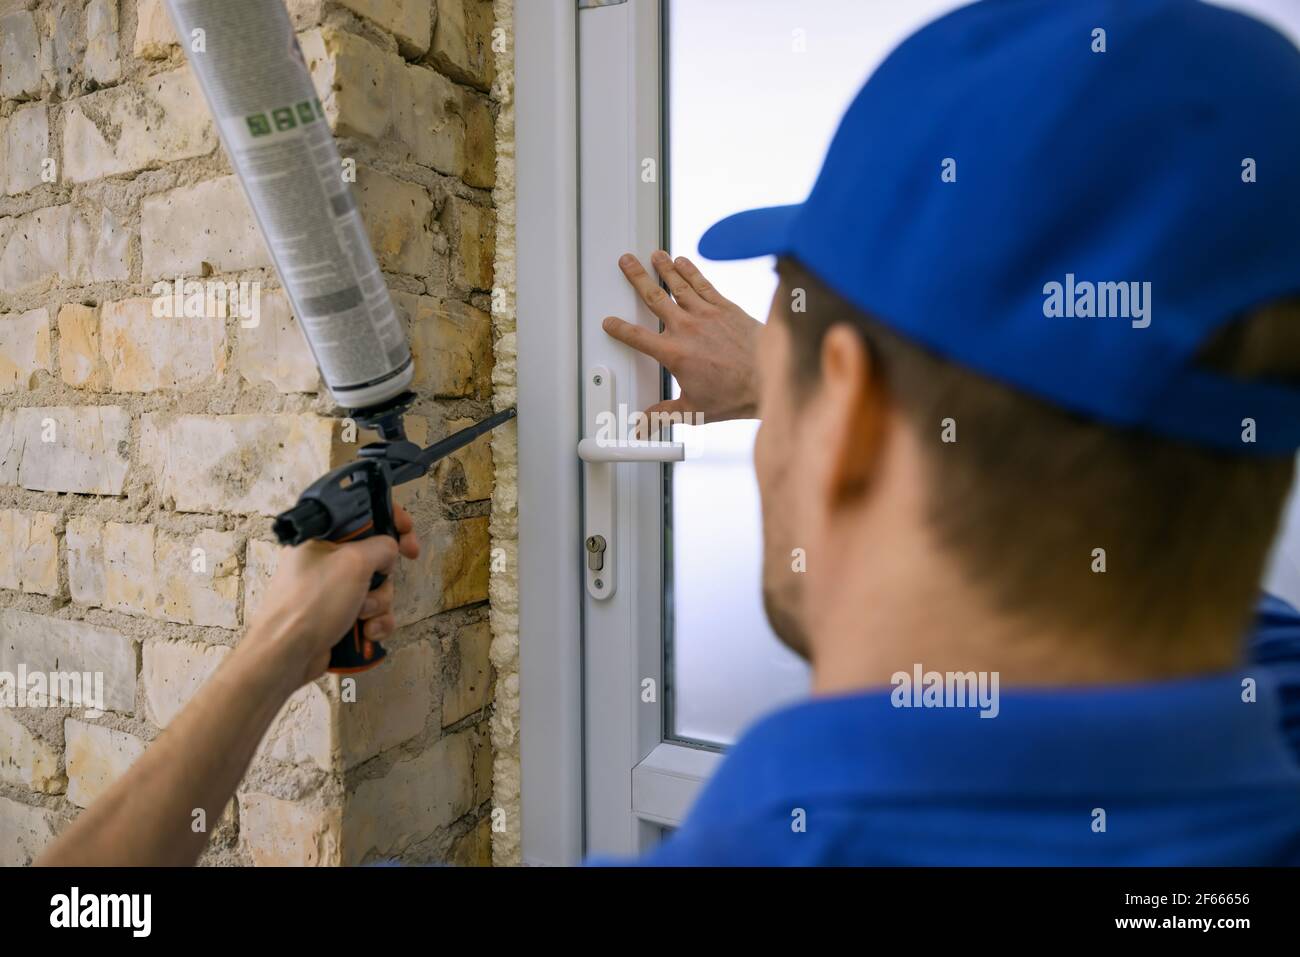 ouvrier installant une nouvelle porte en plastique pvc. montage du cadre avec de la mousse de polyuréthane Banque D'Images